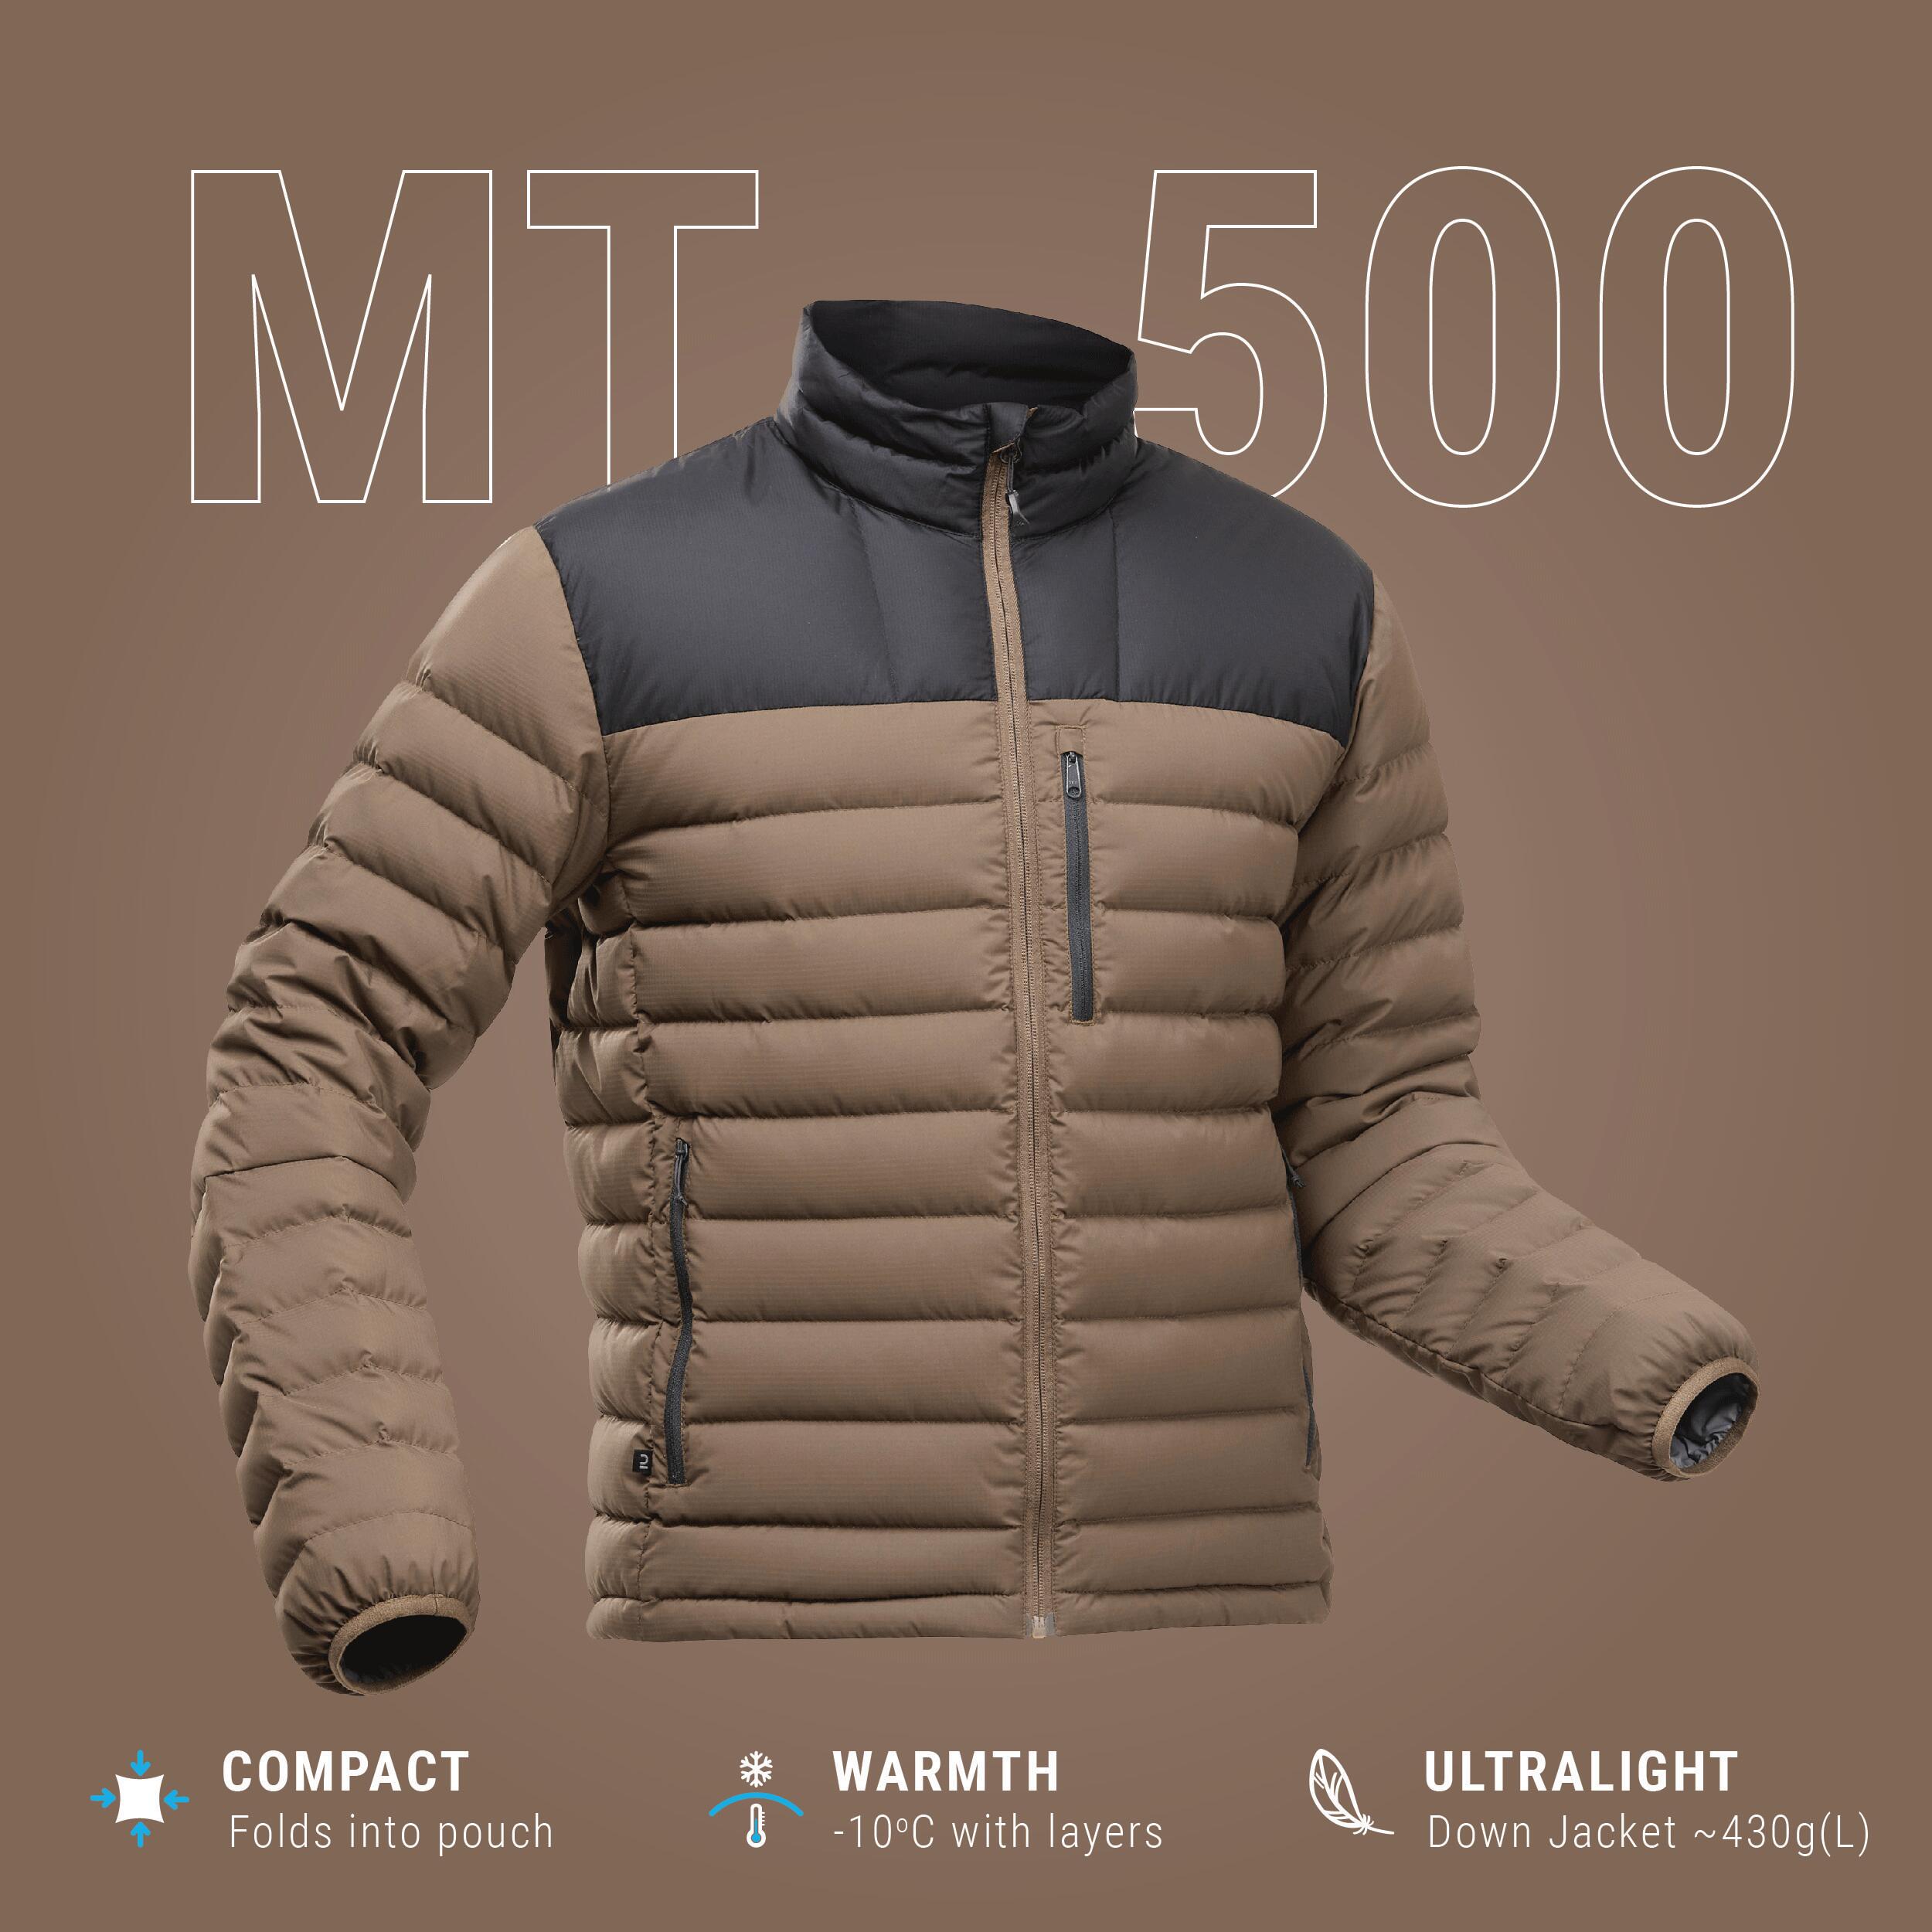 Men’s mountain trekking down jacket - MT500 -10°C 8/11